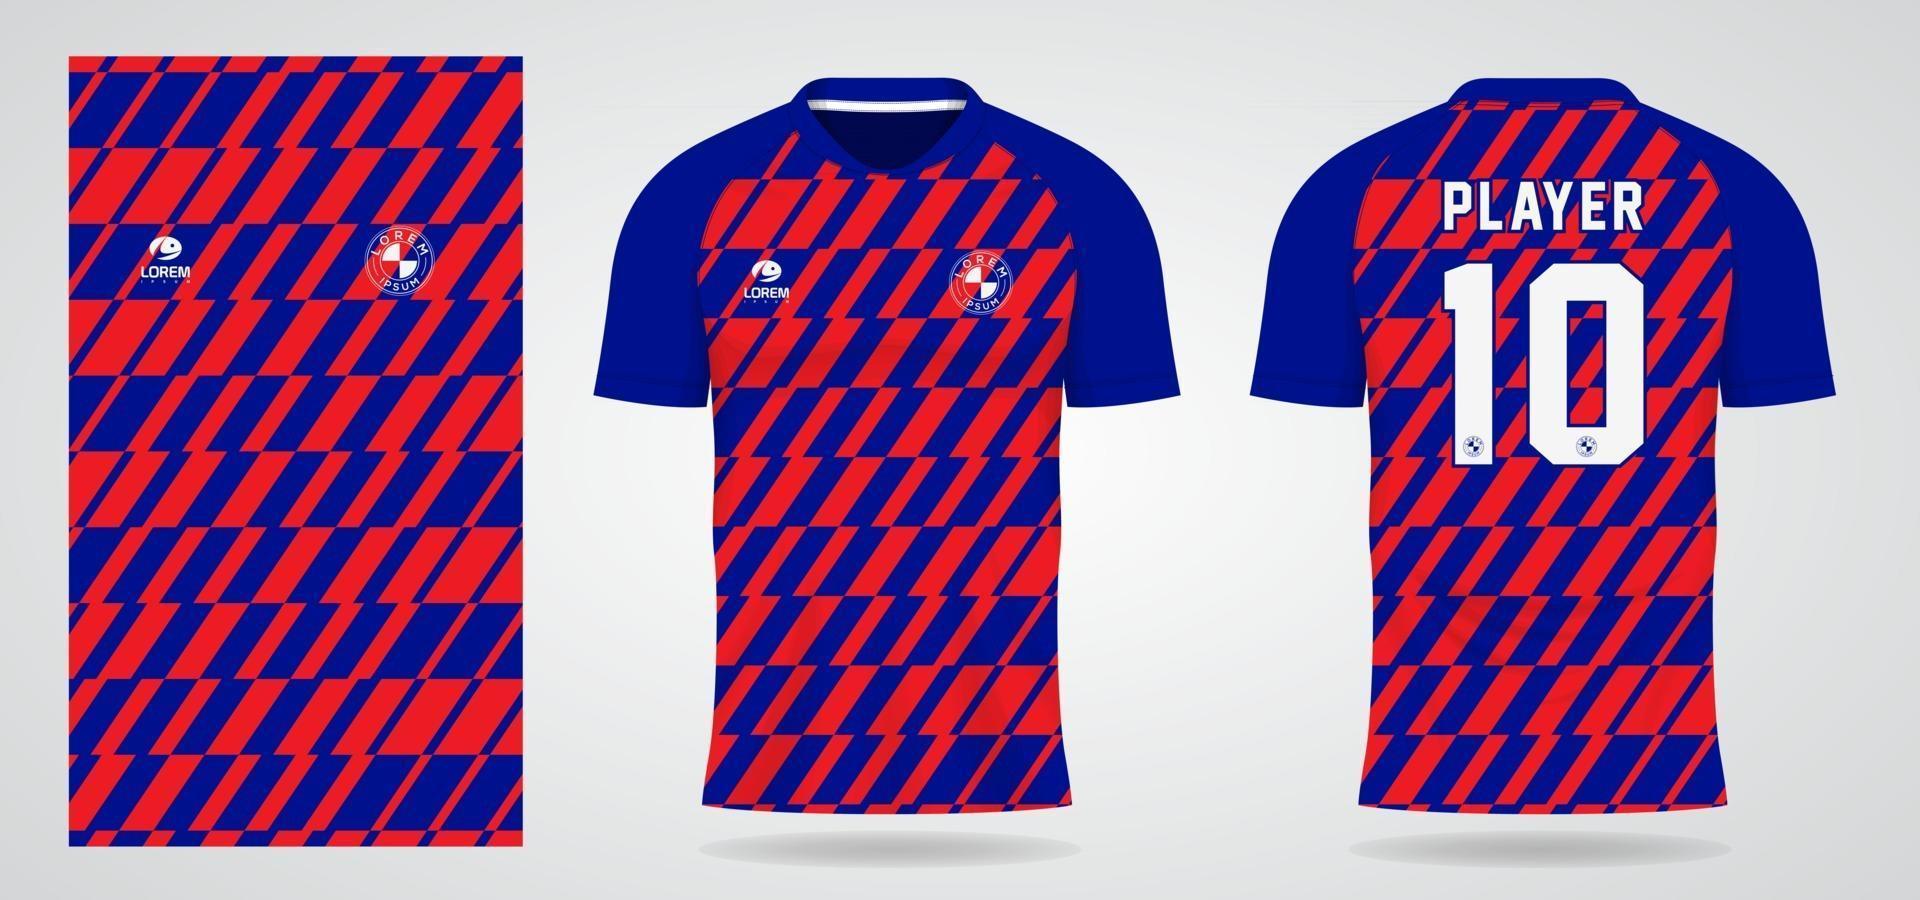 Plantilla de camiseta deportiva roja azul para uniformes de equipo y diseño de camiseta de fútbol vector